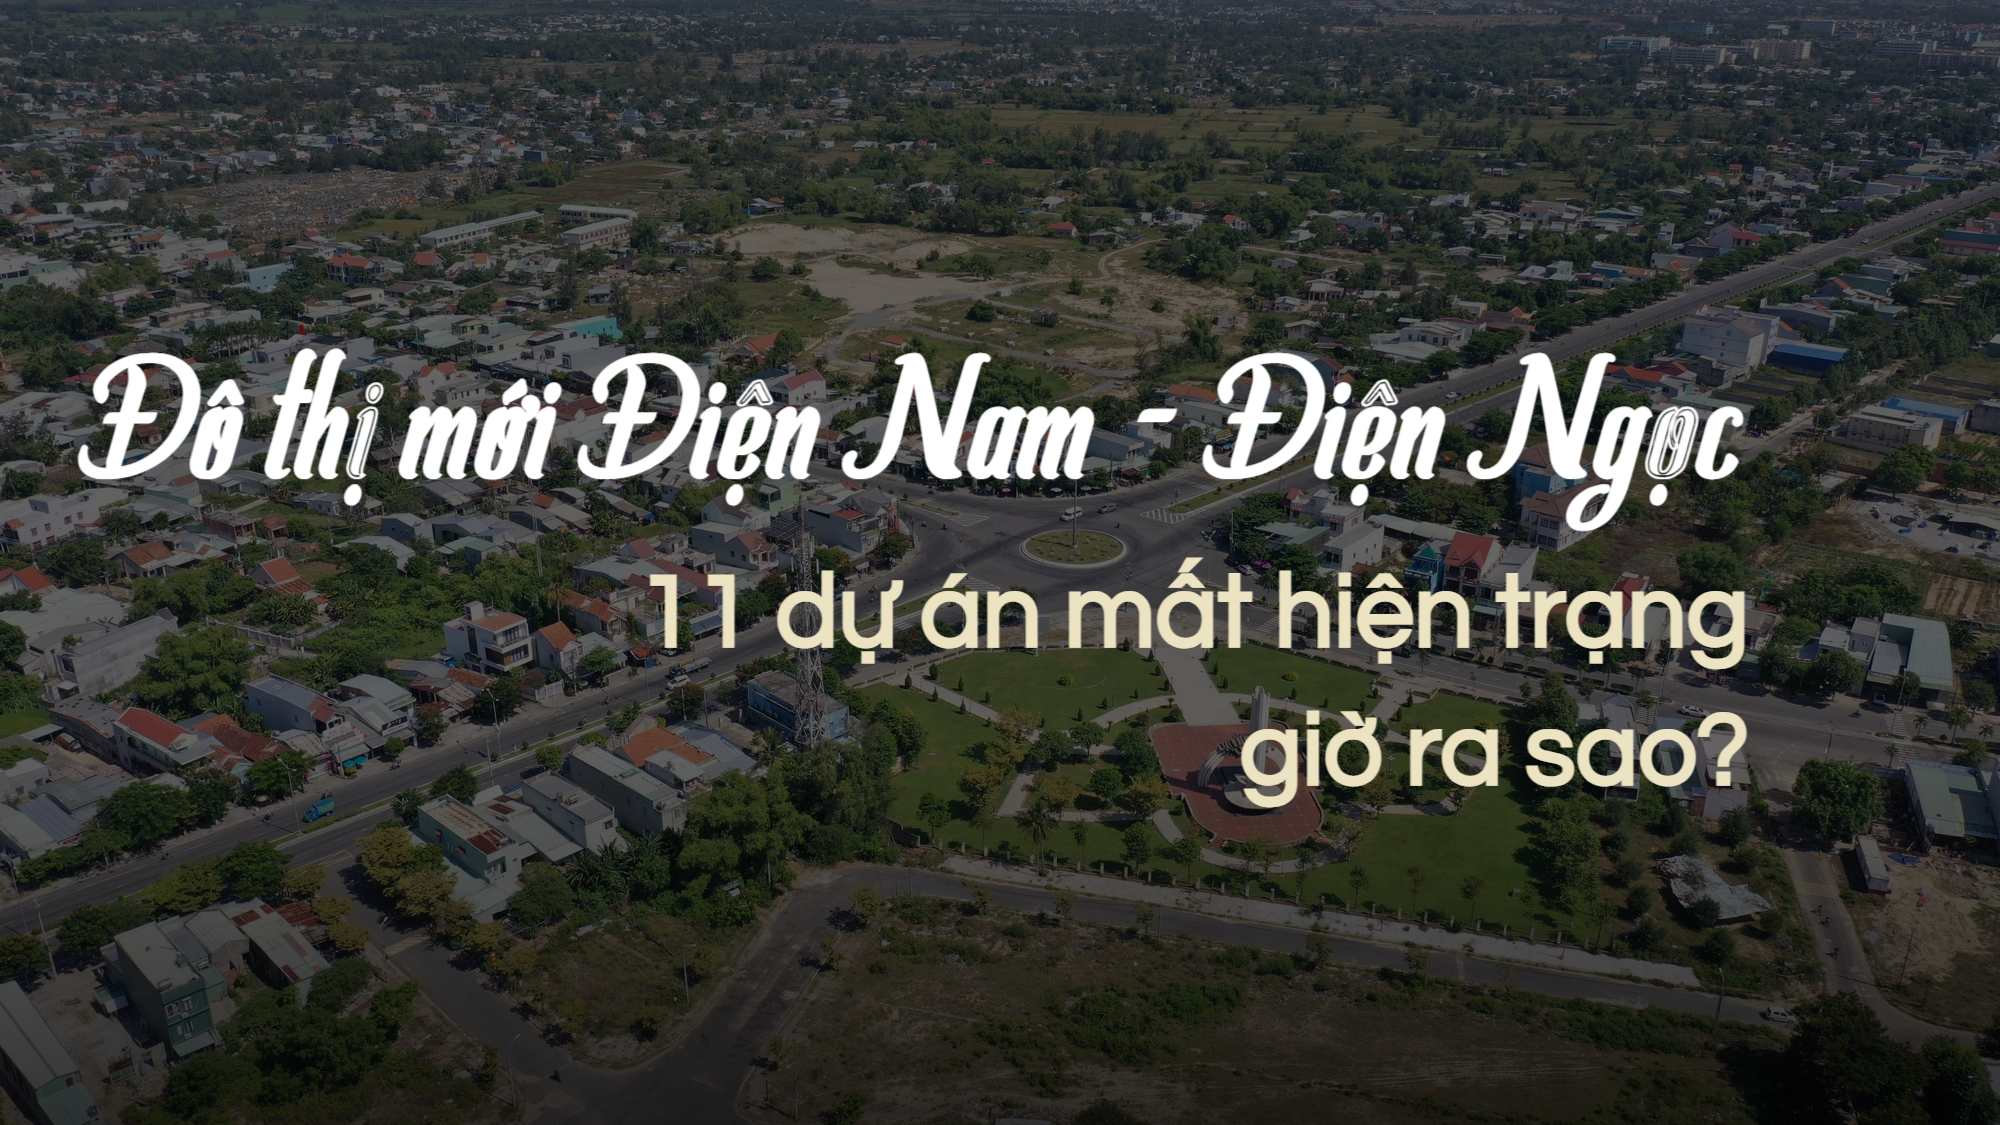 Quảng Nam: Thị xã Điện Bàn nỗ lực "gỡ vướng" dự án theo chủ trương của tỉnh